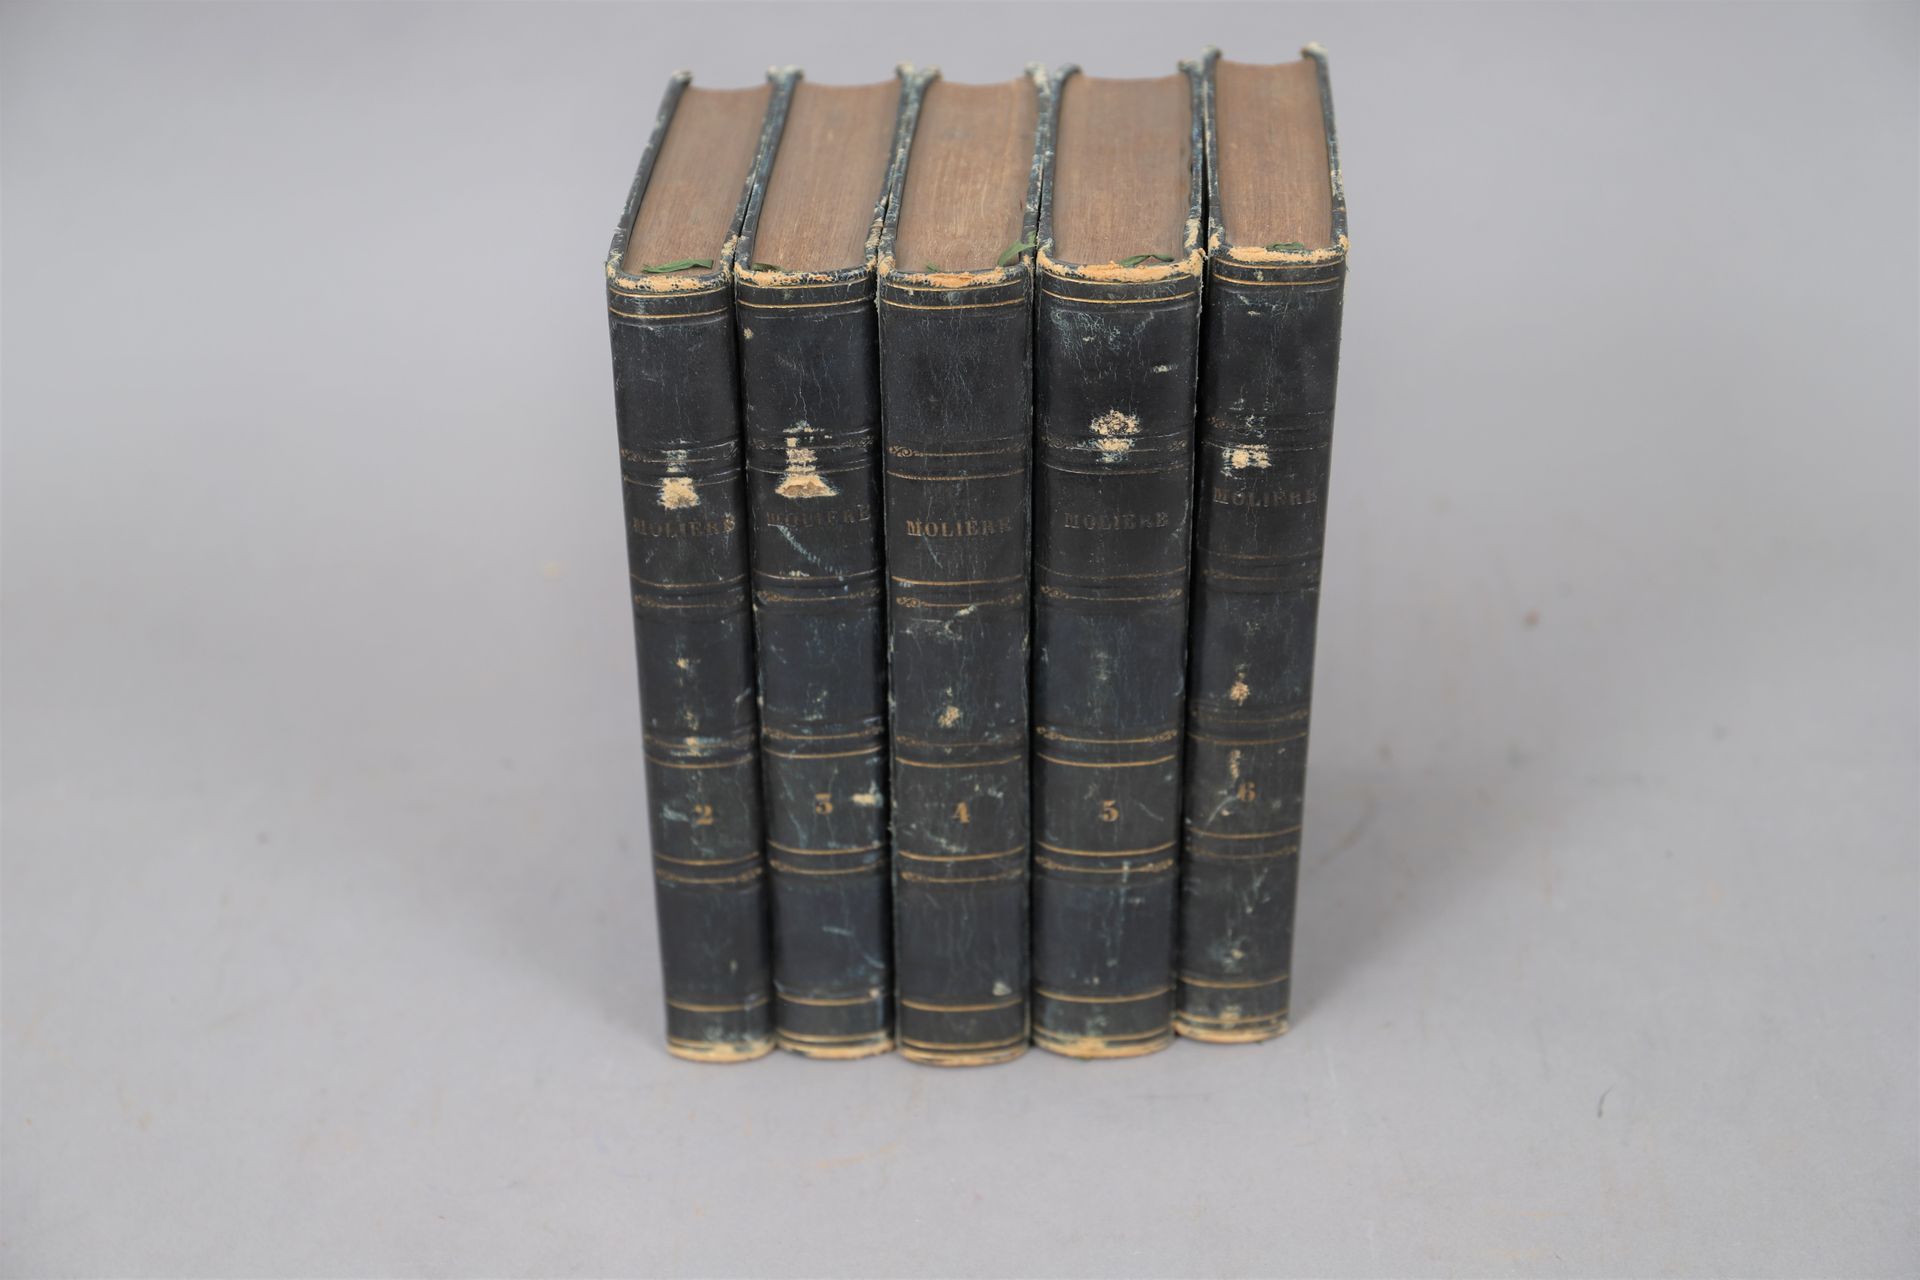 Null WERKE von MOLIERE

Um 1850

5 gebundene Bände.